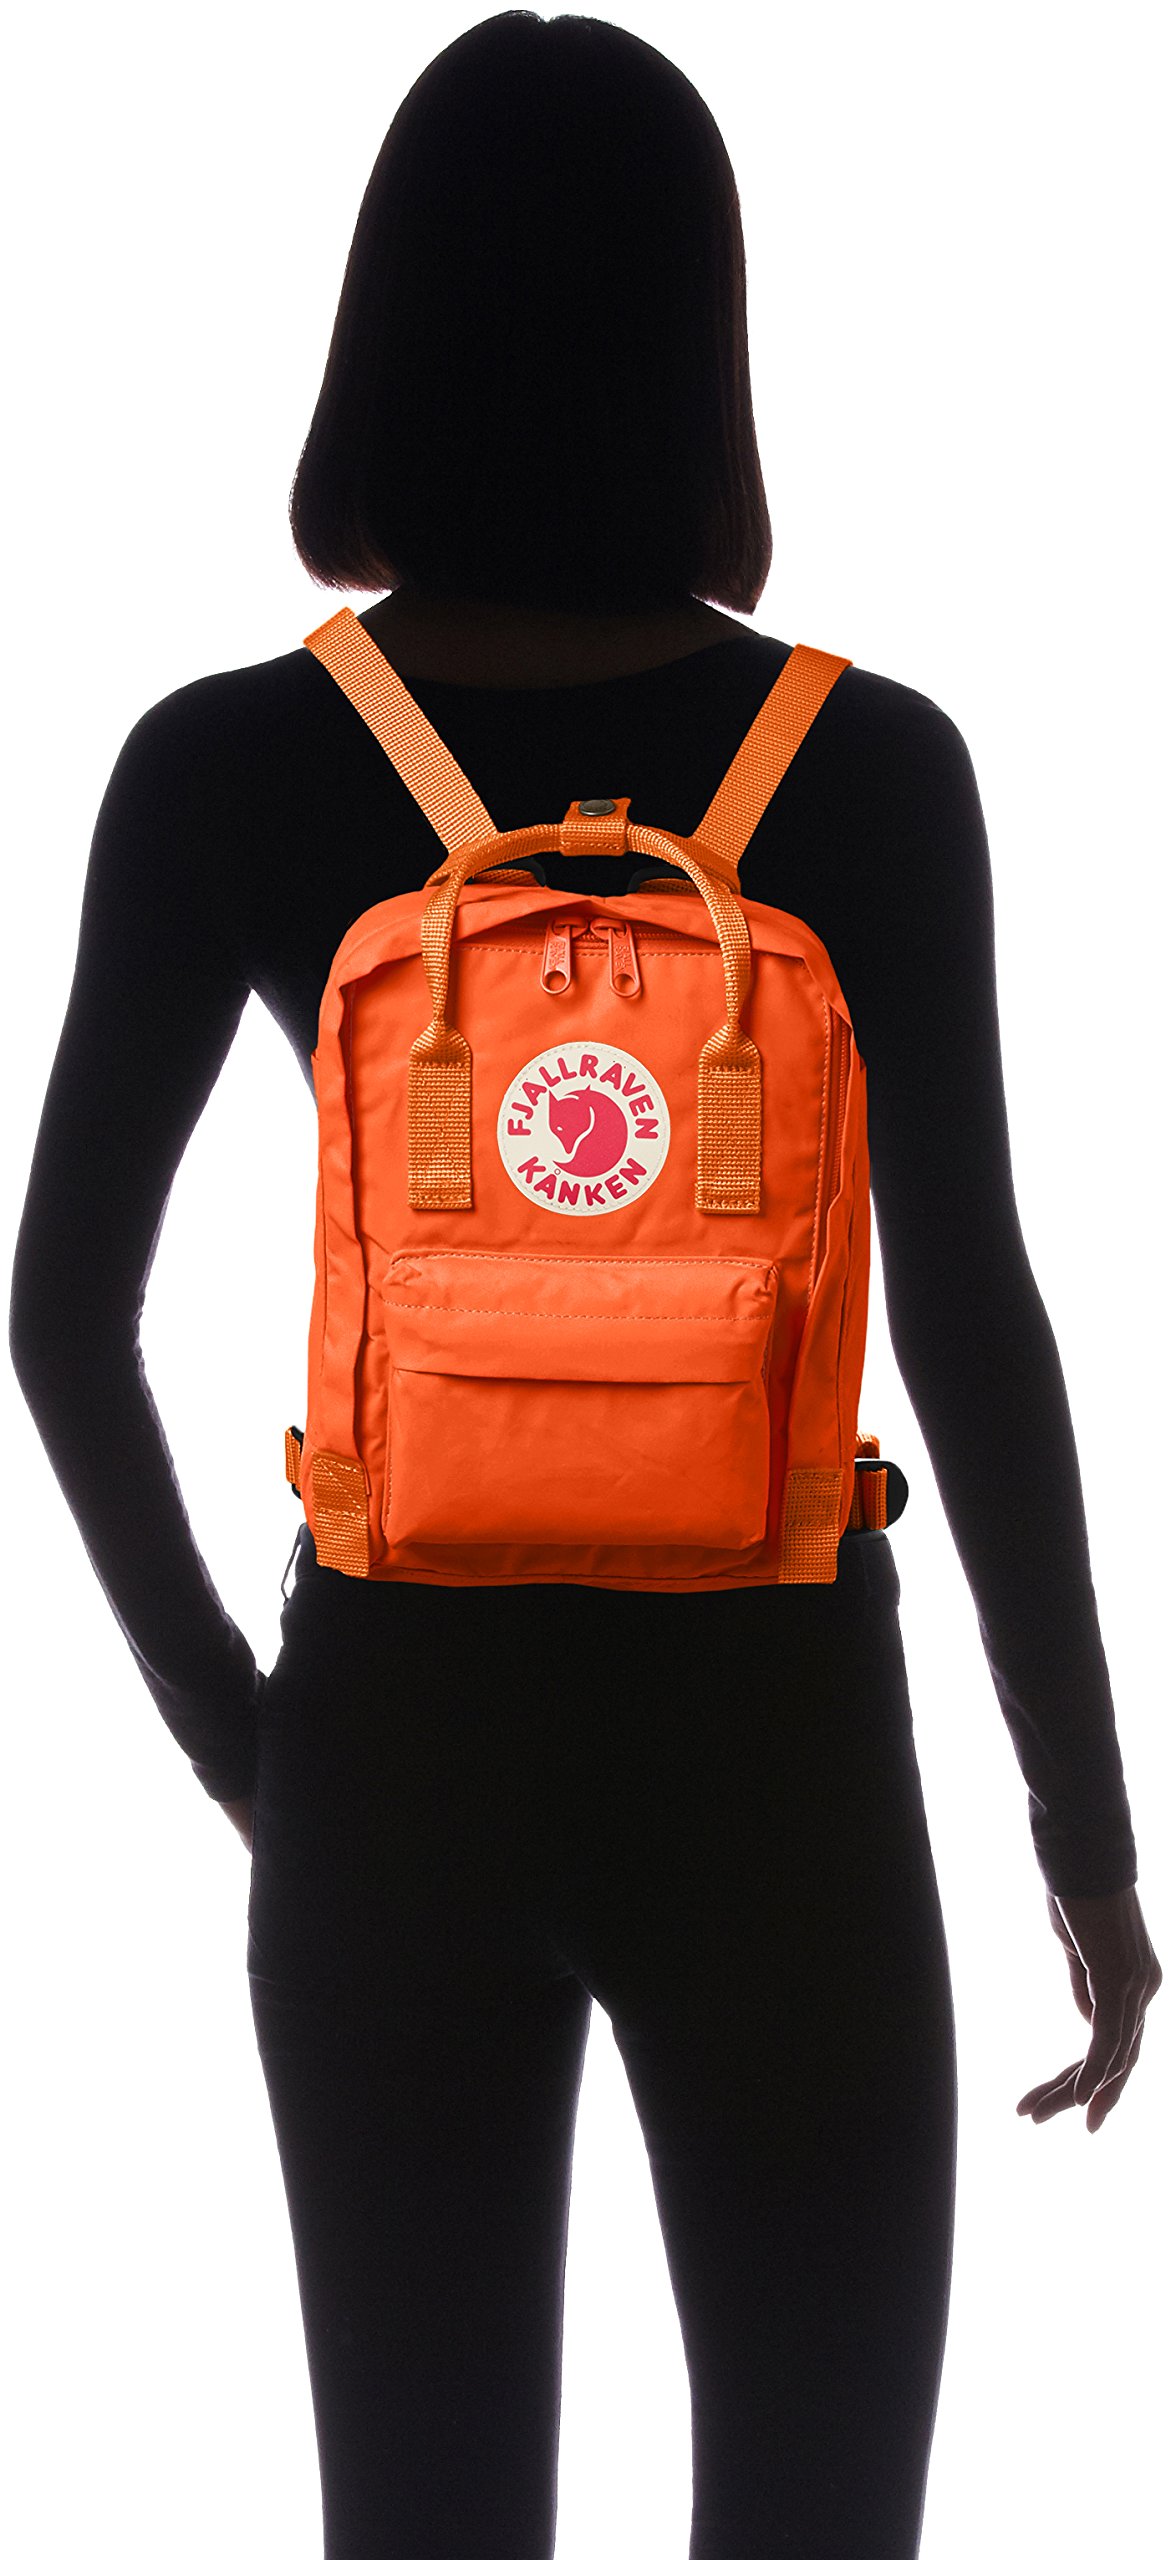 FJALL RAVEN(フェールラーベン) Fährlaven Kanken Mini Women's Official Amazon Backpack, Burnt Orange